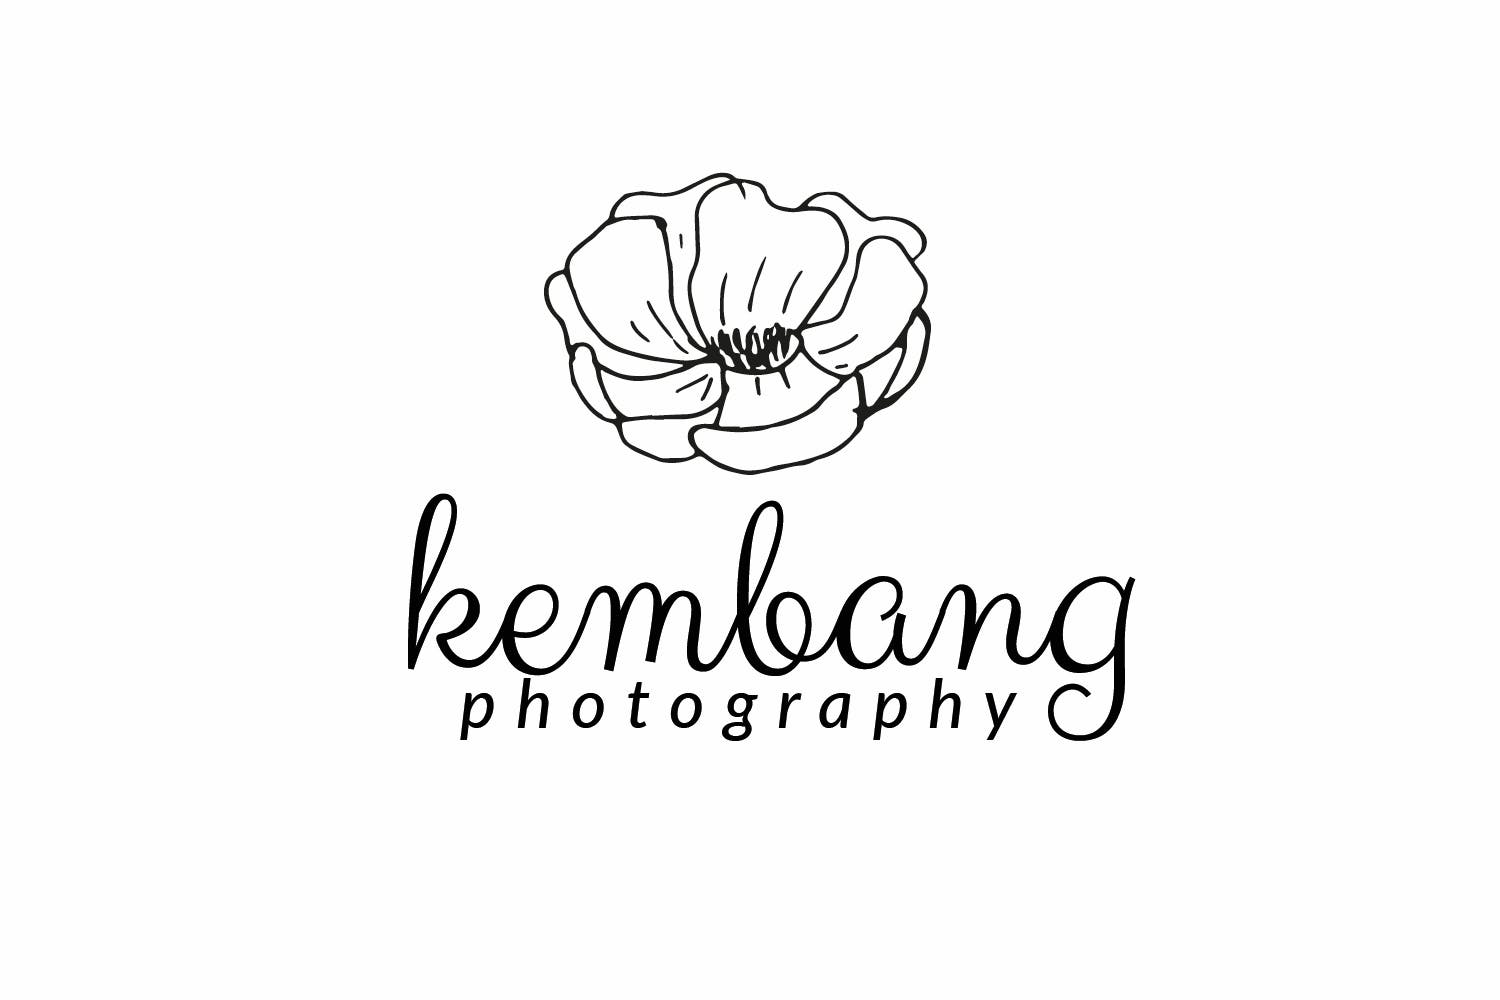 花卉几何图形摄影品牌Logo设计素材库精选模板 Flower Photography Logo插图(1)